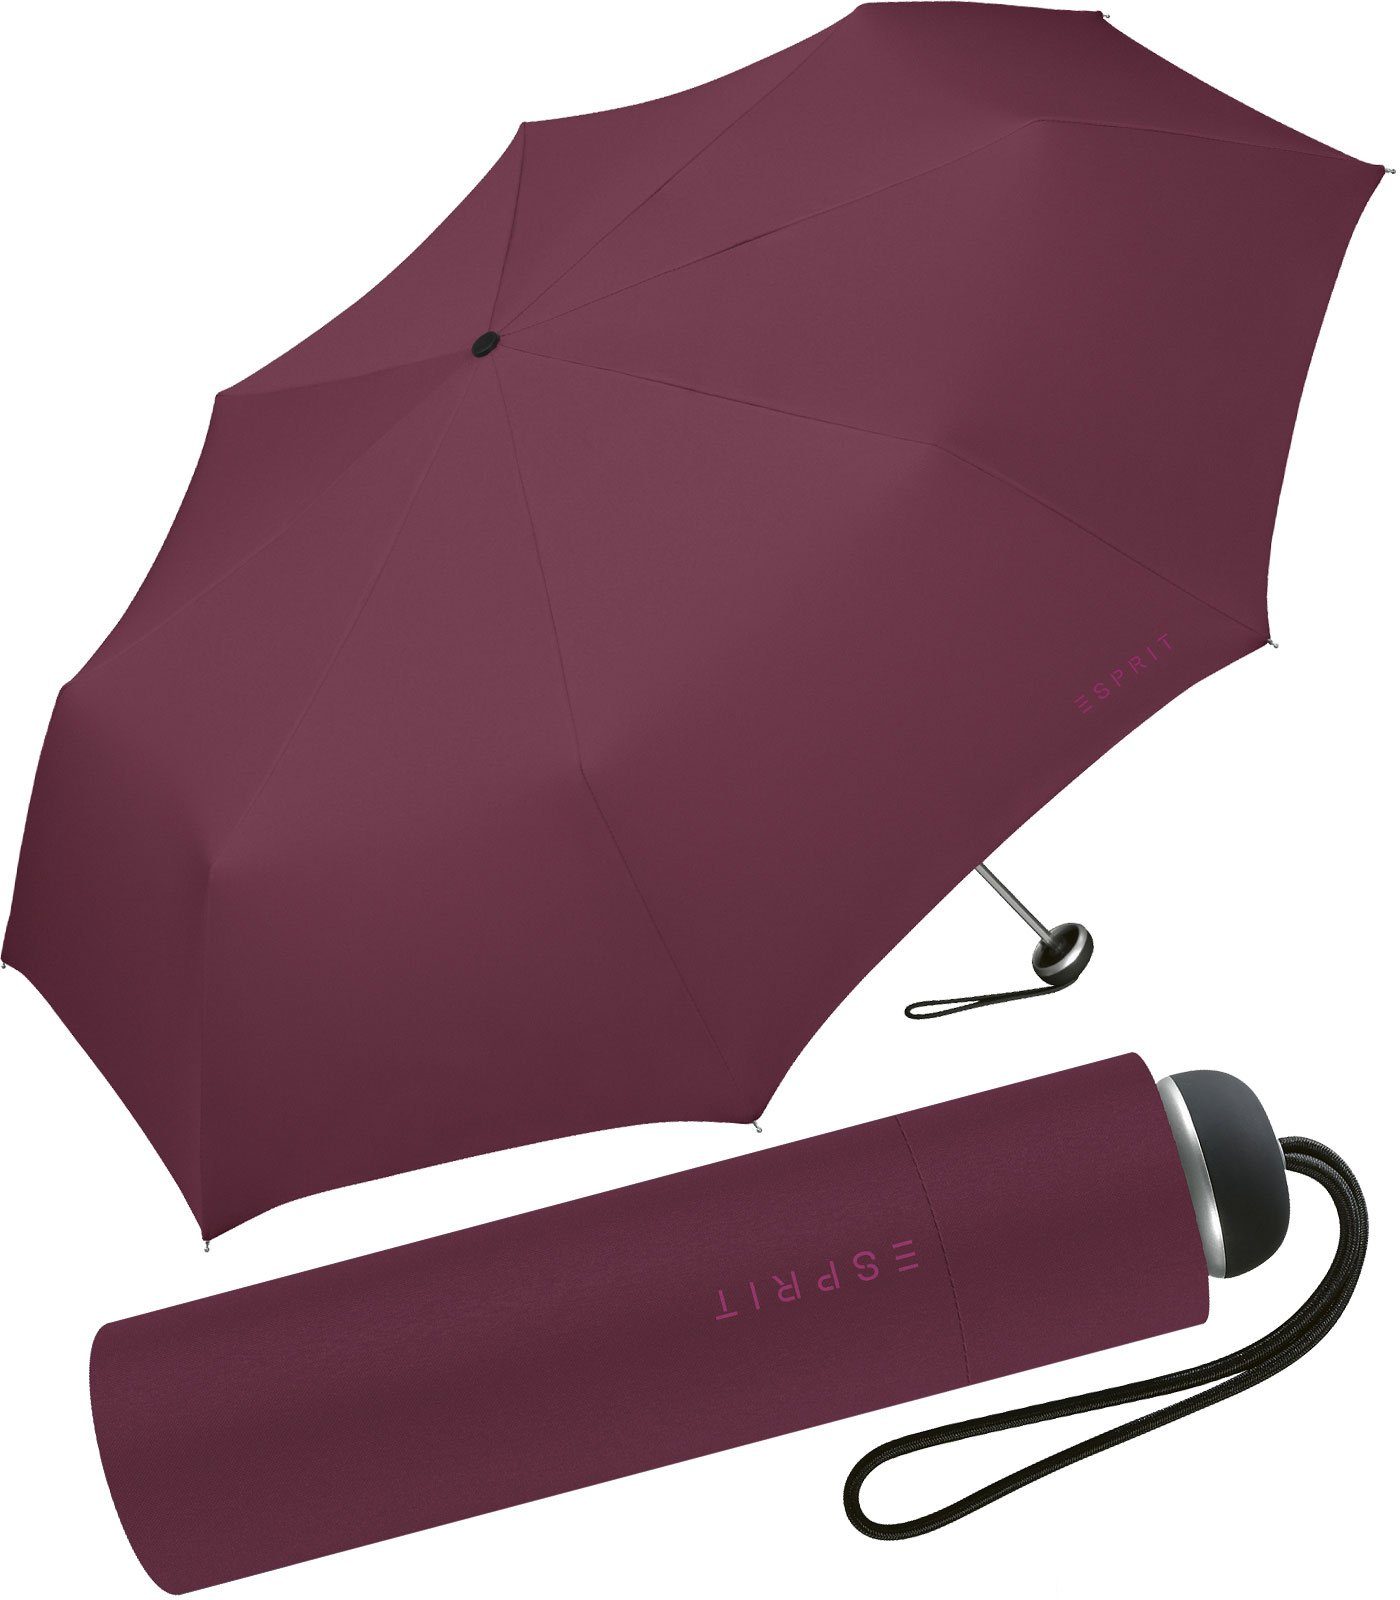 Esprit Taschenregenschirm leichter, handlicher Schirm für Damen, Begleiter in modischen Farben - maroon banner bordeaux